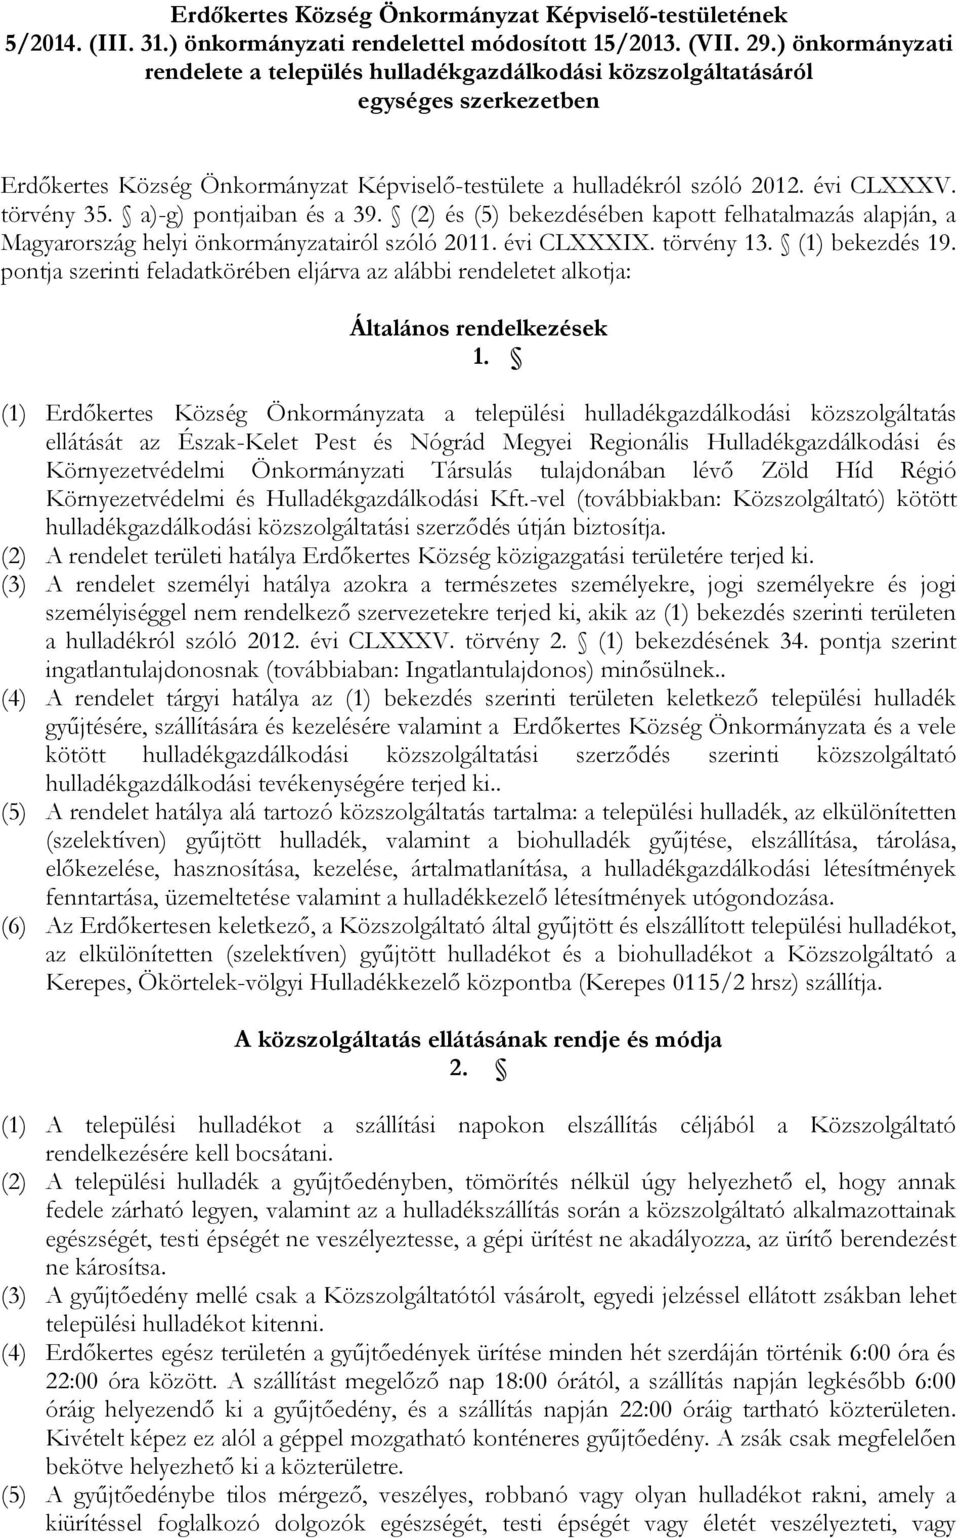 törvény 35. a)-g) pontjaiban és a 39. (2) és (5) bekezdésében kapott felhatalmazás alapján, a Magyarország helyi önkormányzatairól szóló 2011. évi CLXXXIX. törvény 13. (1) bekezdés 19.